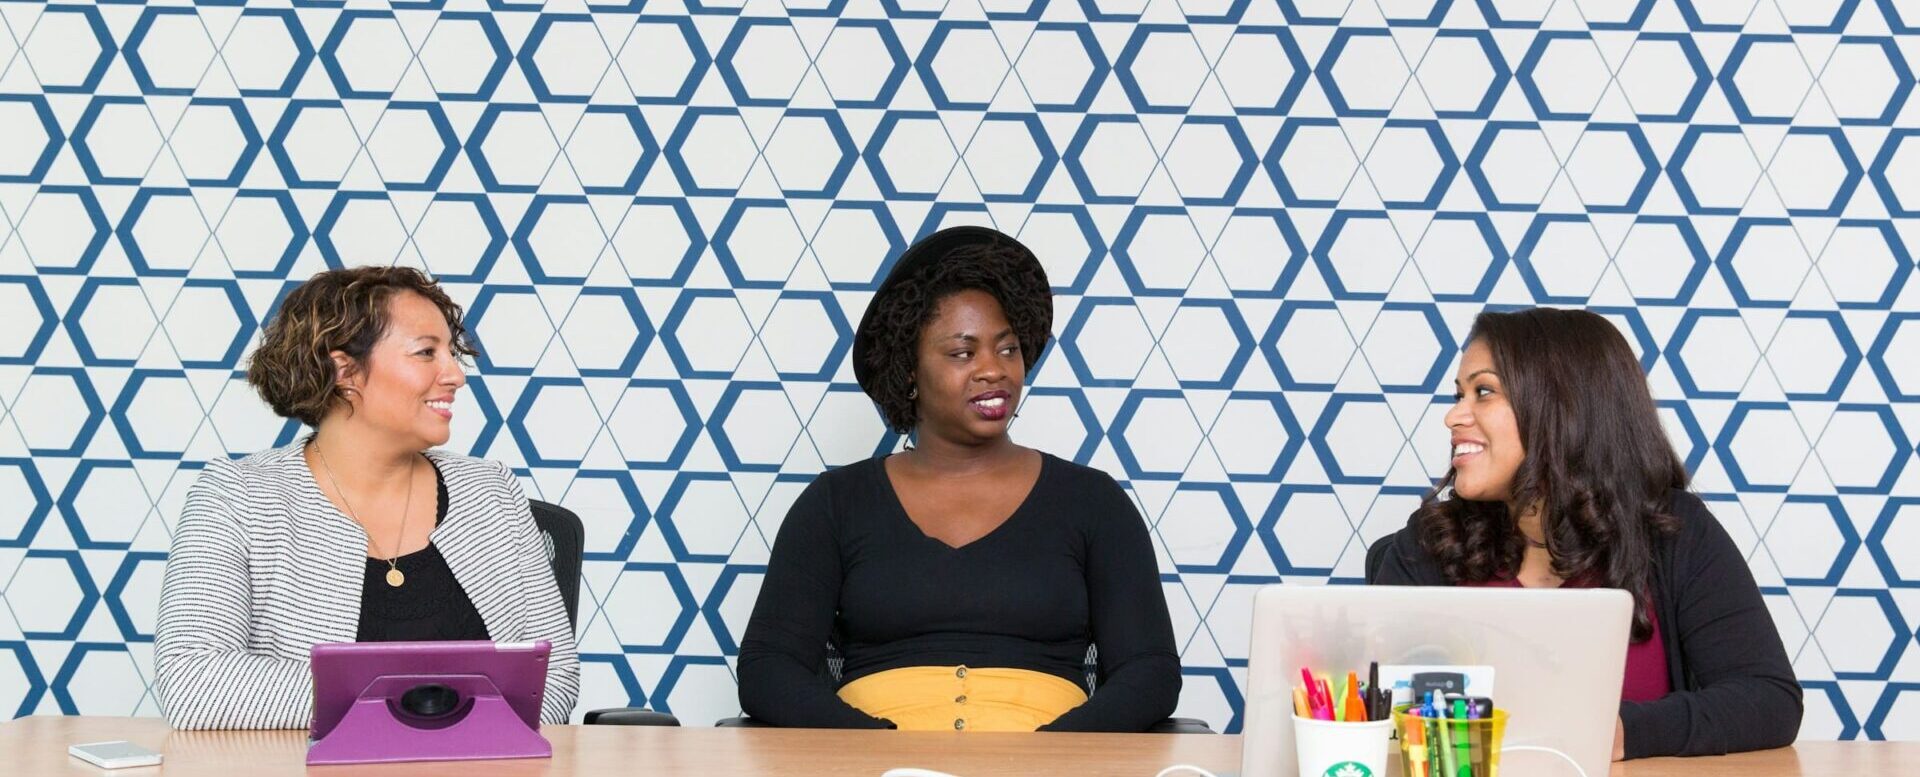 Foto de uma mulher latina, uma negra e outra caucasiana, sentadas em uma grande mesa de escritório em fundo de parede em mosaico azul e branco. Dia Internacional da Mulher #8M